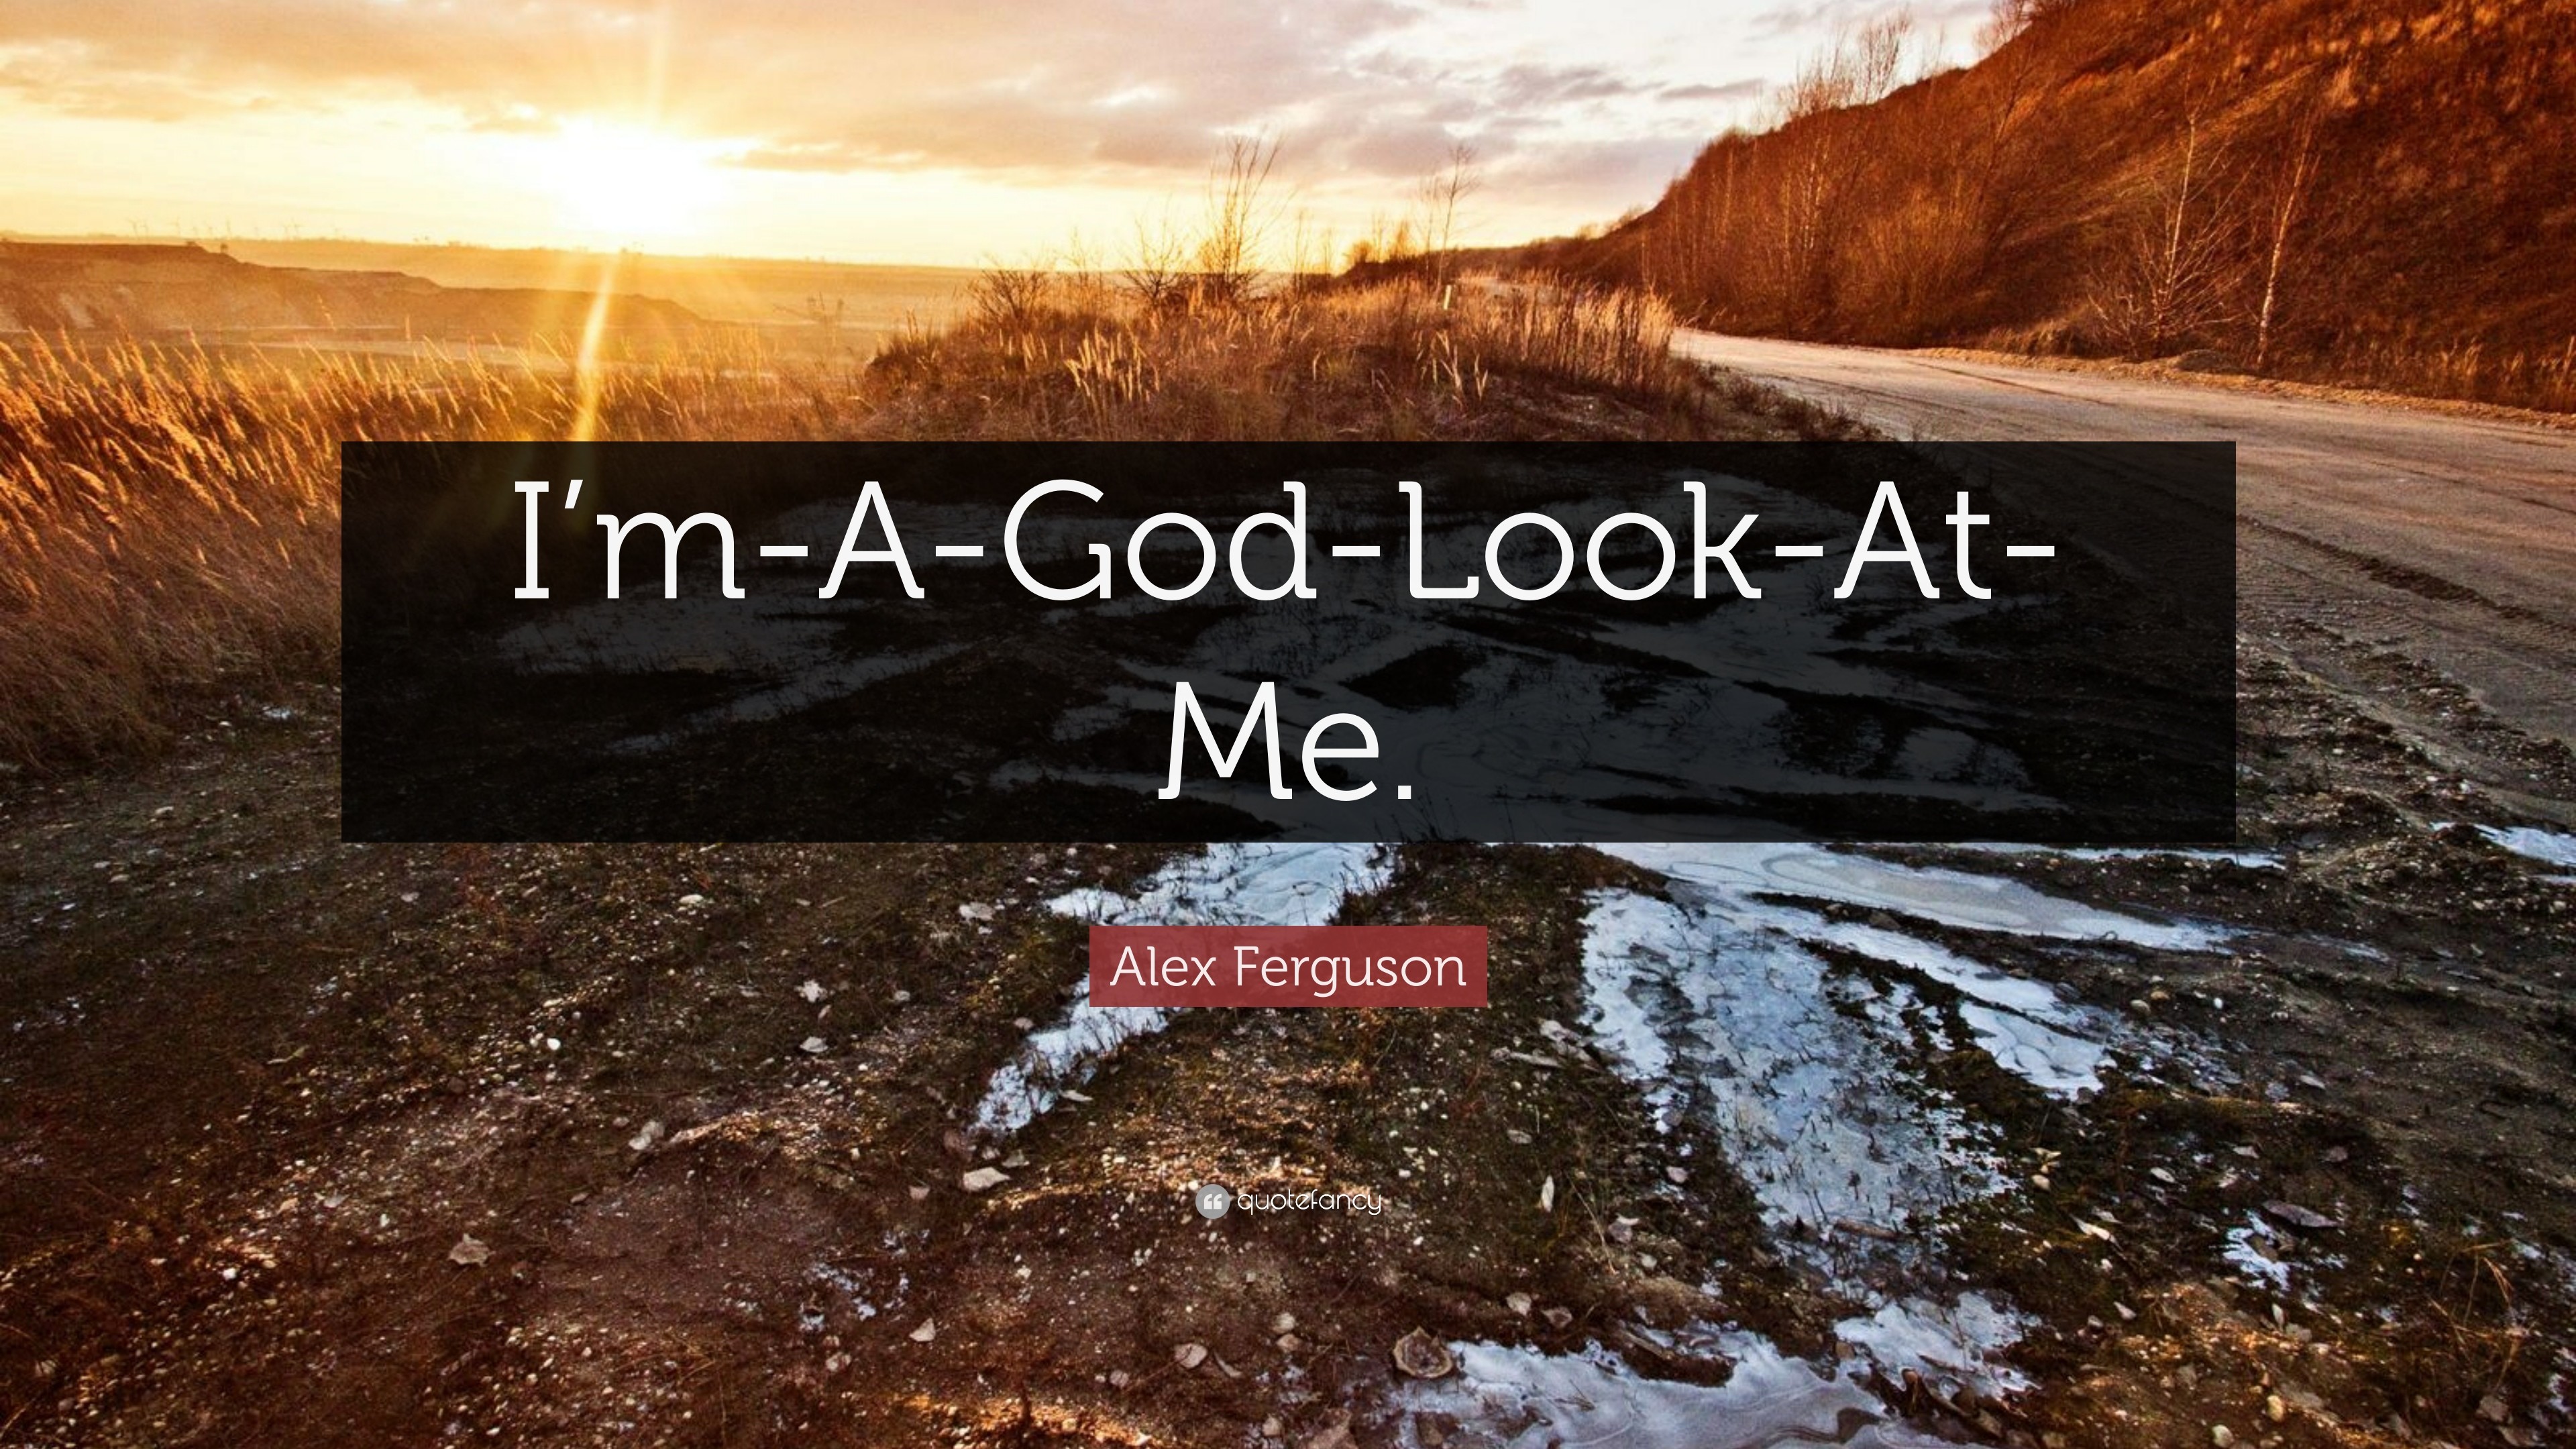 3840x2160 Alex Ferguson Quote: “I'm-A-God-Look-At